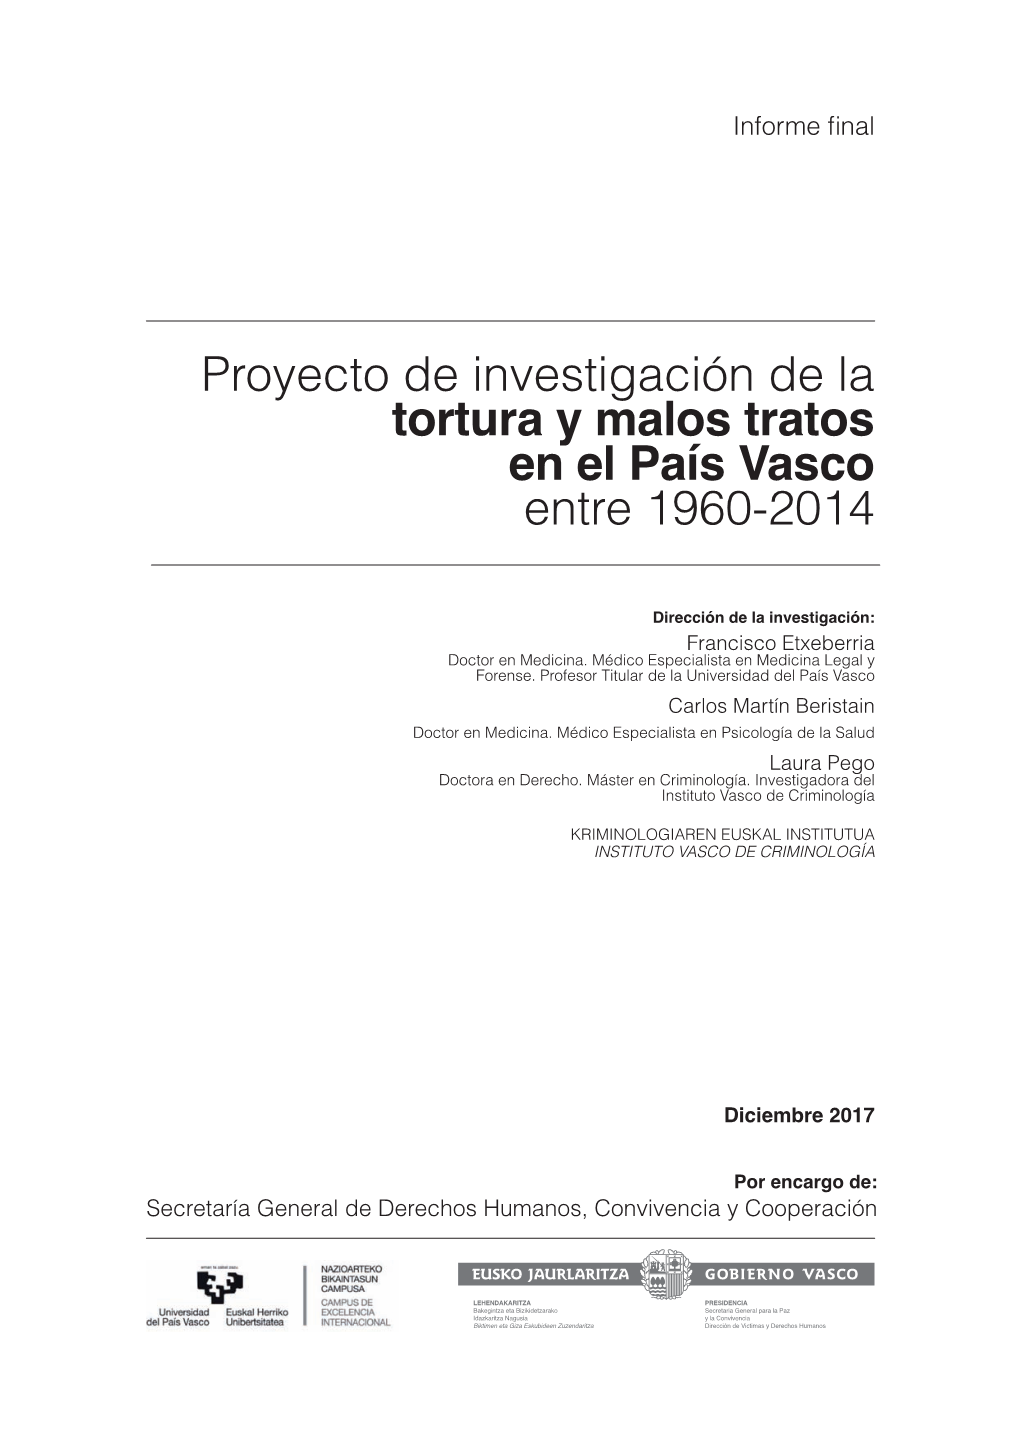 Proyecto De Investigación De La Tortura Y Malos Tratos En El País Vasco Entre 1960-2014